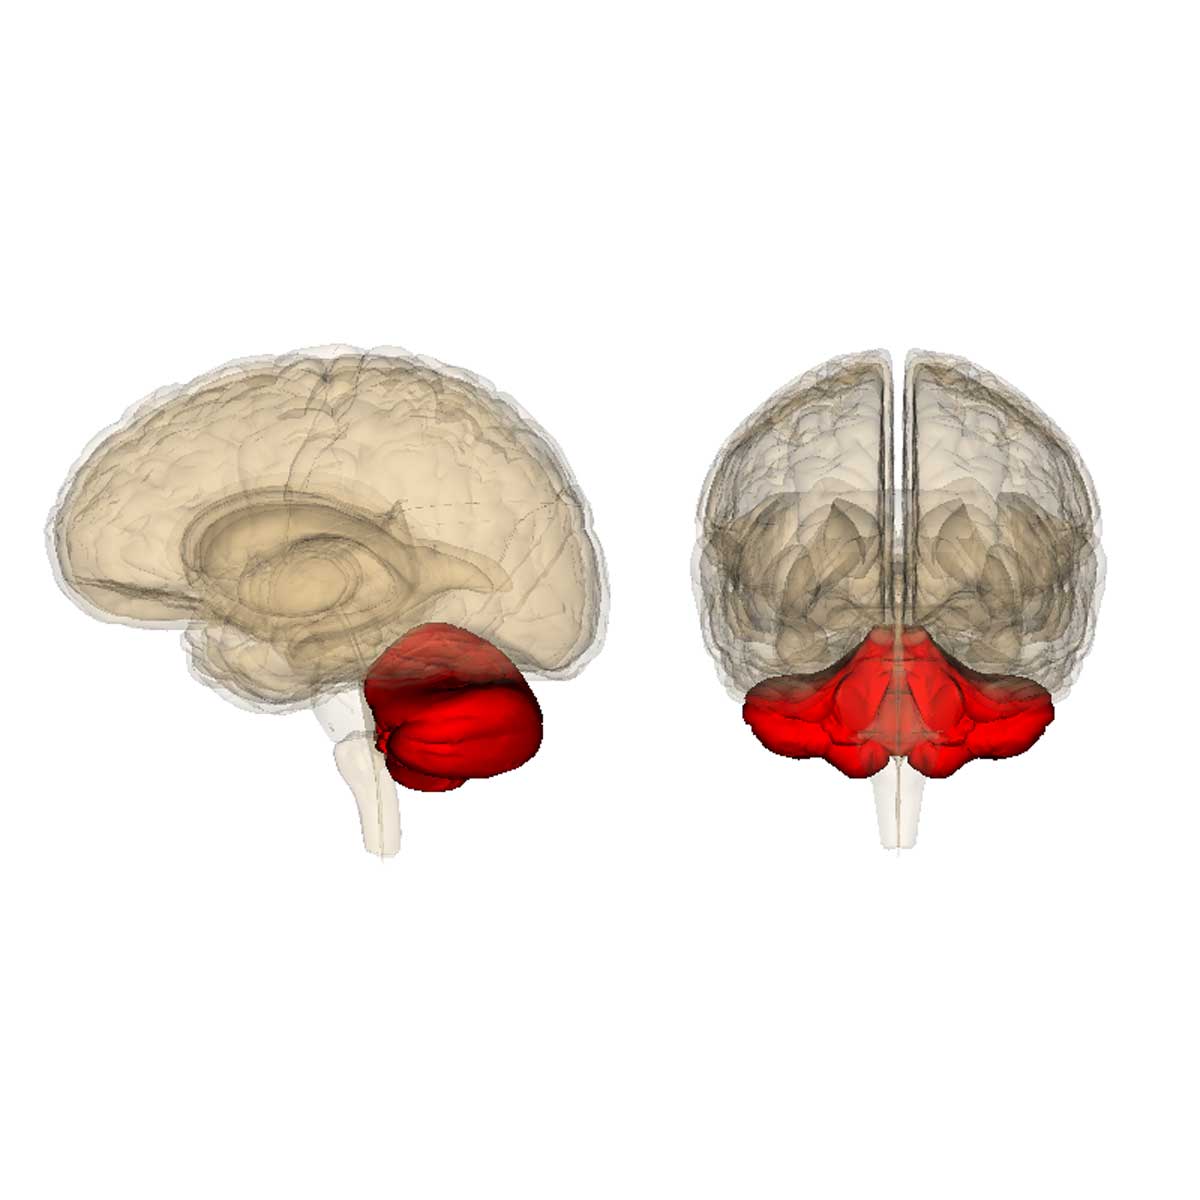 El cerebelo es la parte del encéfalo encargada de algunos aspectos del movimiento.